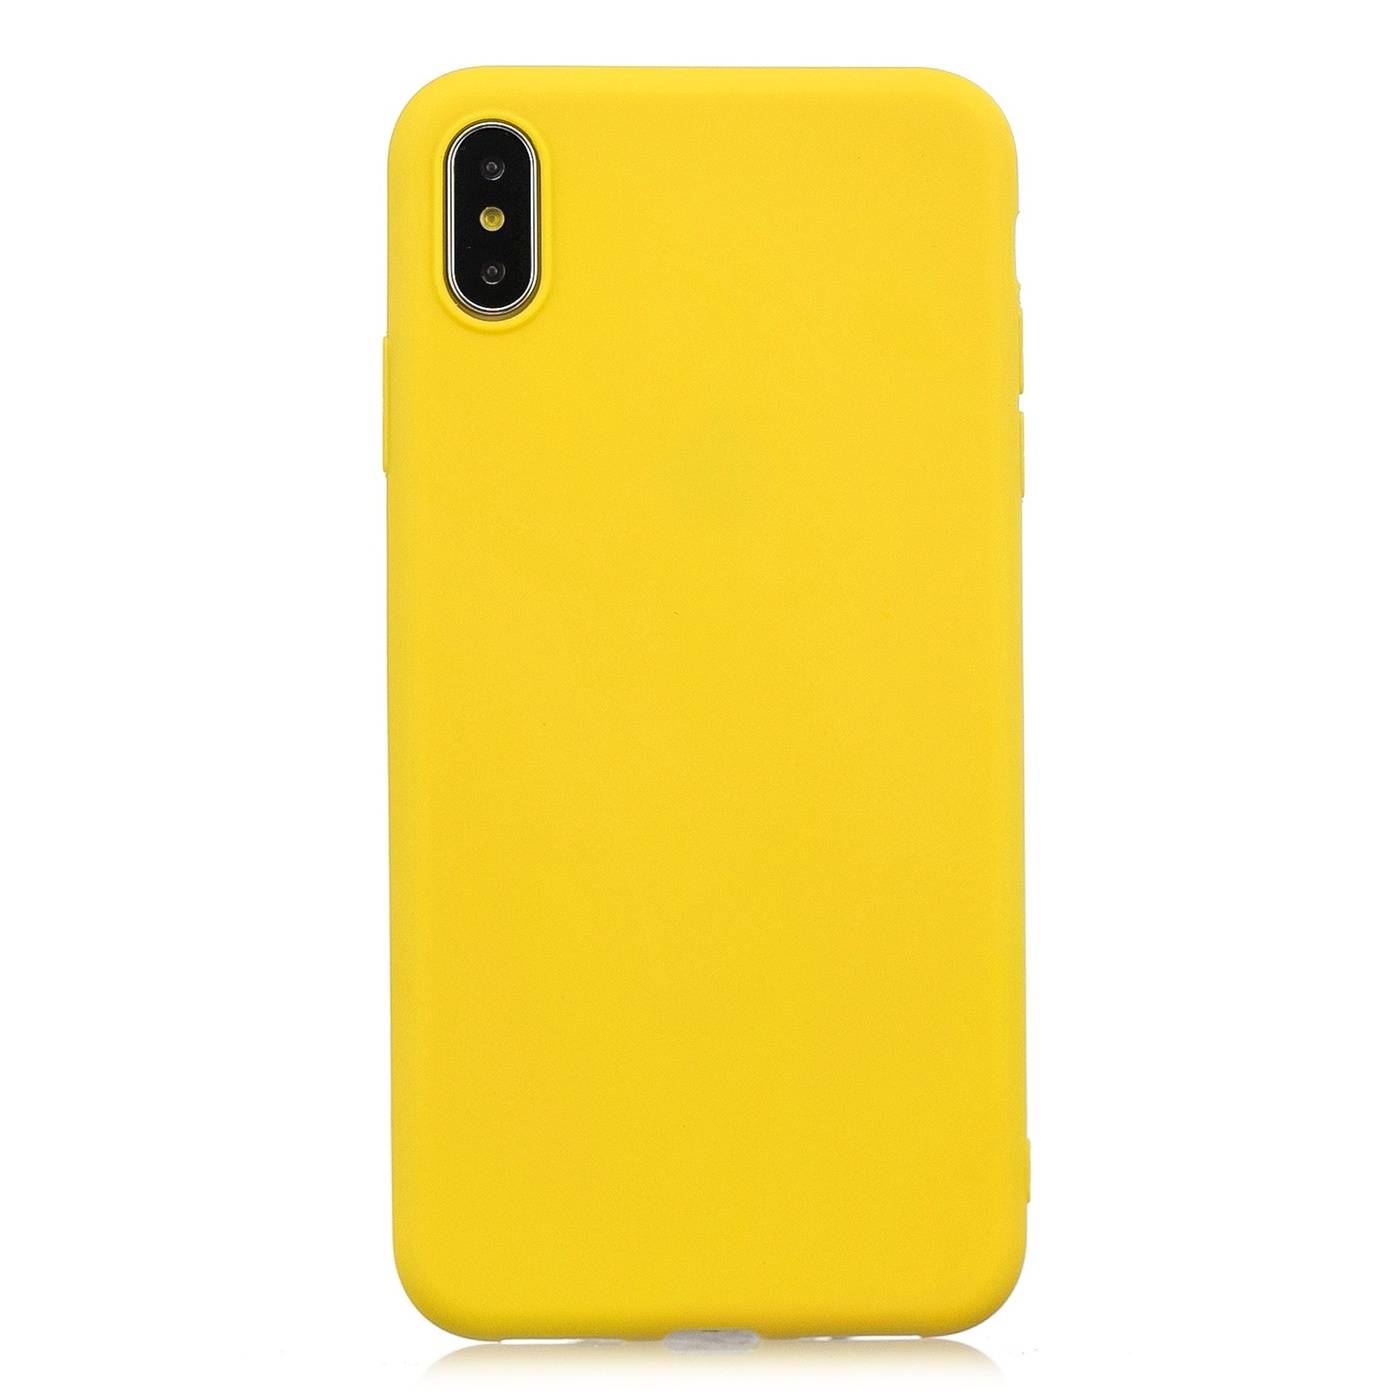 Ультратонкий пластиковый чехол Bruno Soft Touch для iPhone XS Max (Желтый)